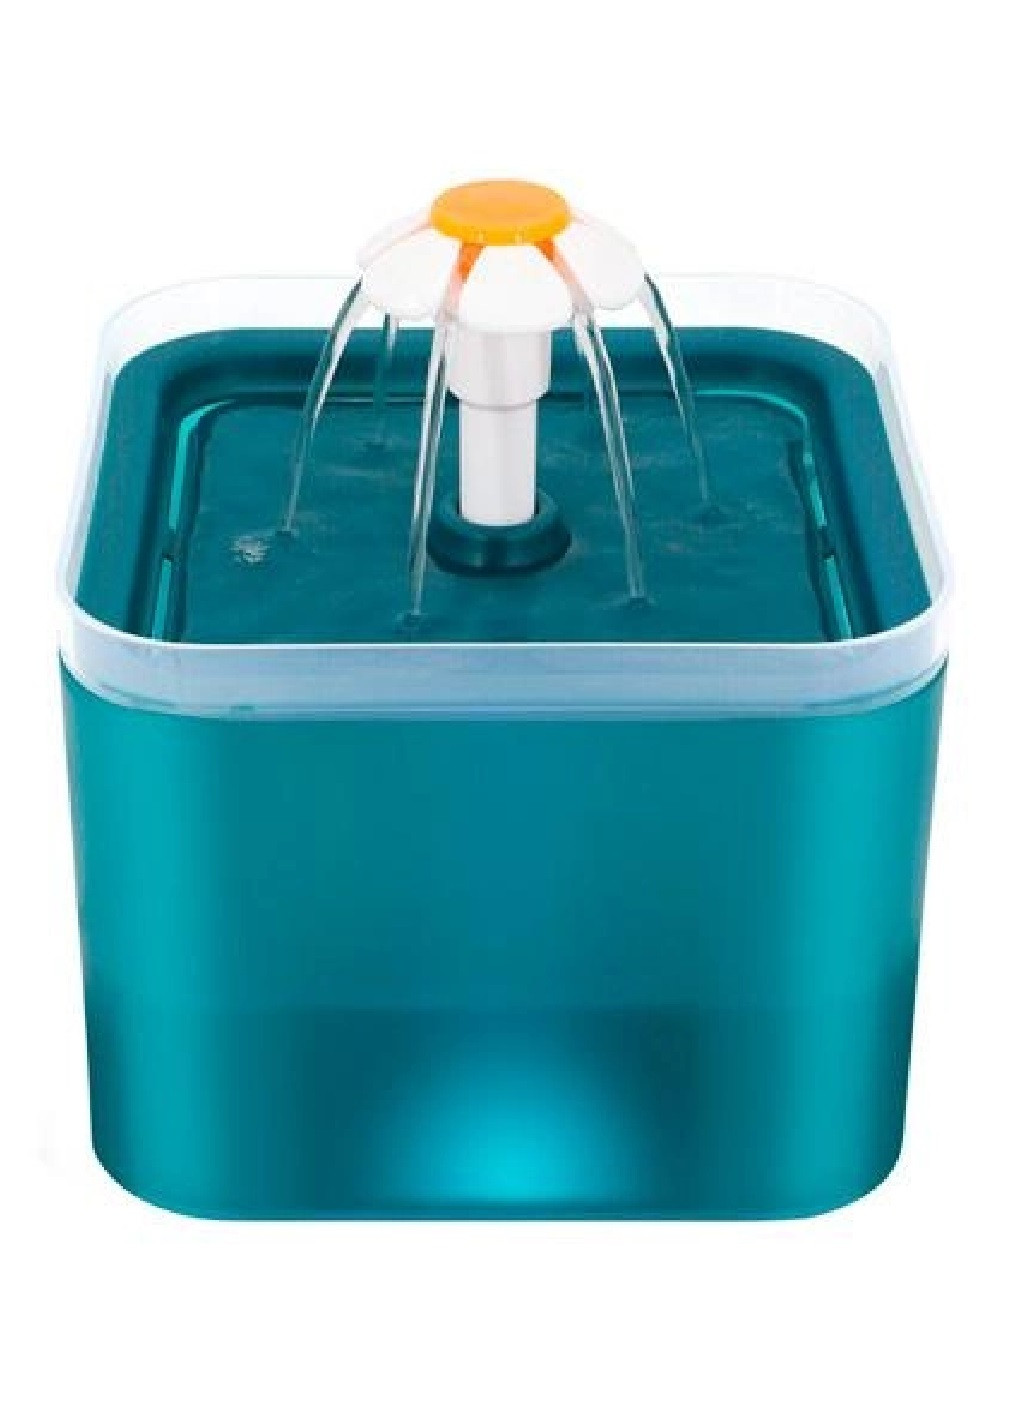 Питьевой фонтанчик поилка автопоилка посуда для кошек собак животных с фильтром USB 2 л 16х16х12.5 см (475735-Prob) Unbranded (270827887)